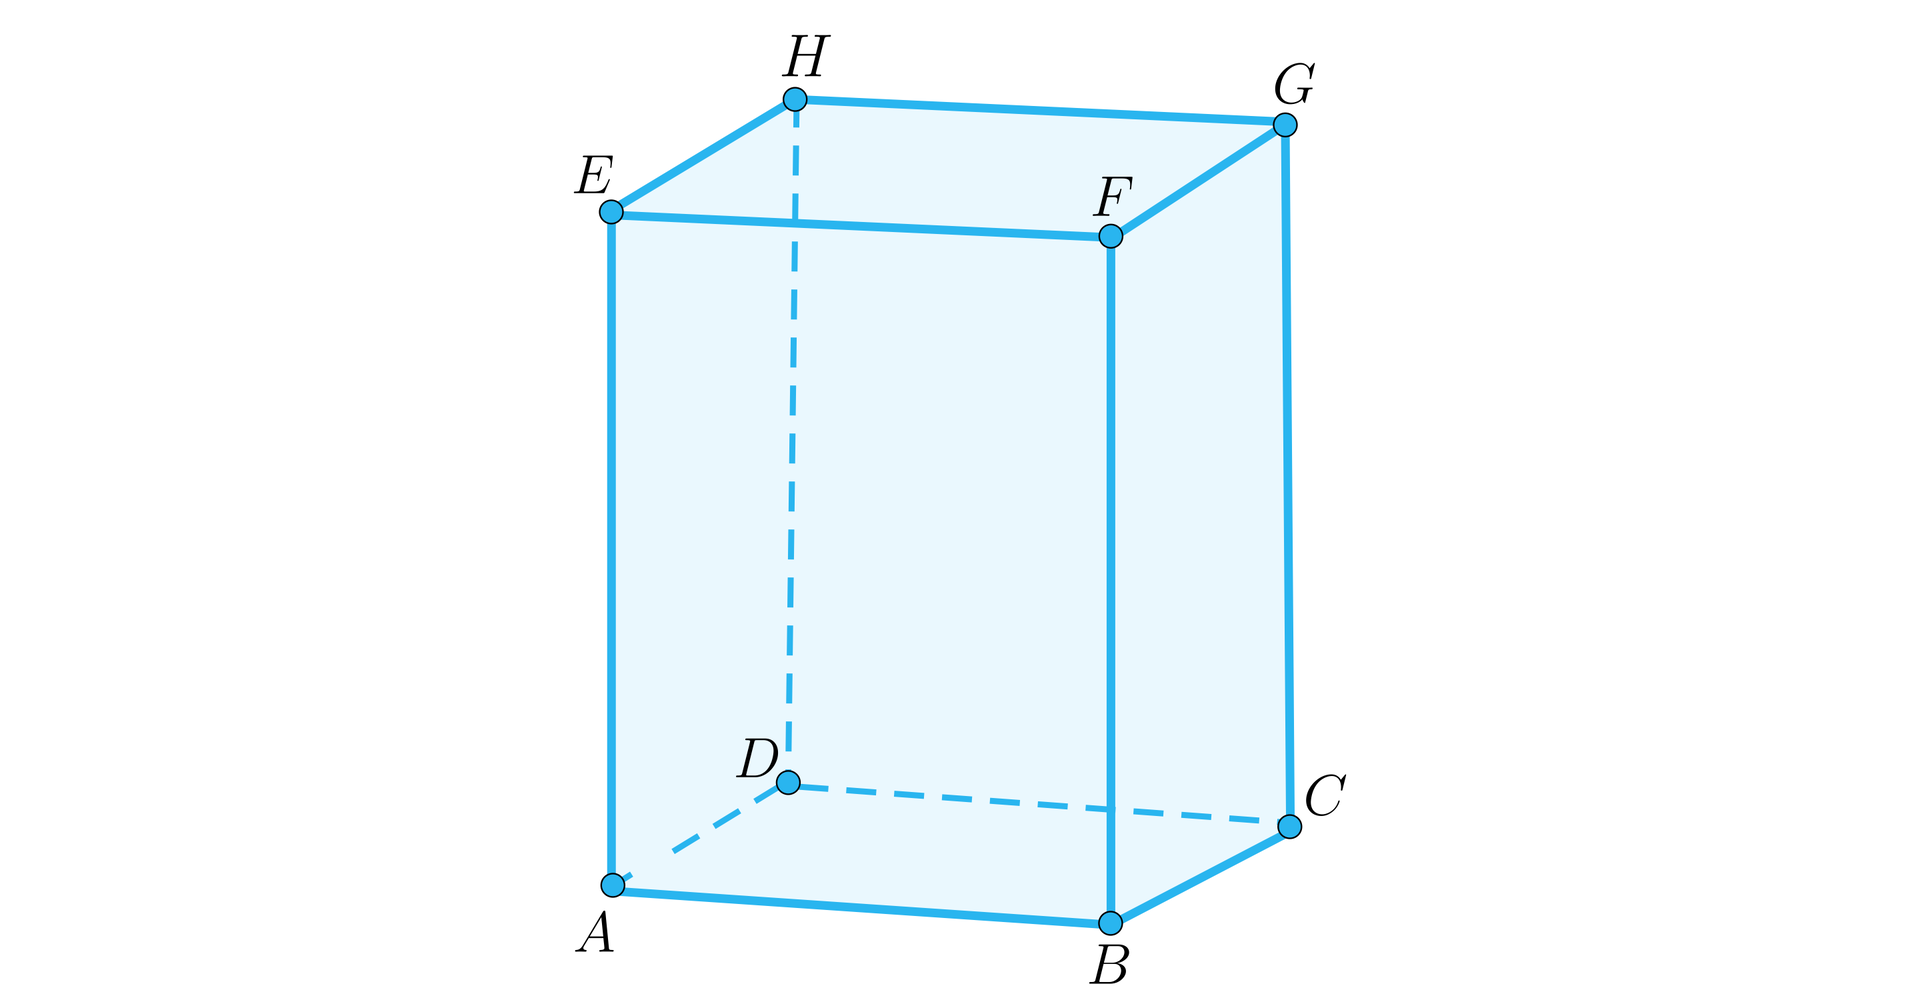 Ilustracja przedstawia graniastosłup prawidłowy czworokątny A B C D E F G H, gdzie wierzchołek F znajduje się nad wierzchołkiem A, wierzchołek E nad B, wierzchołek G nad C oraz wierzchołek H nad D.